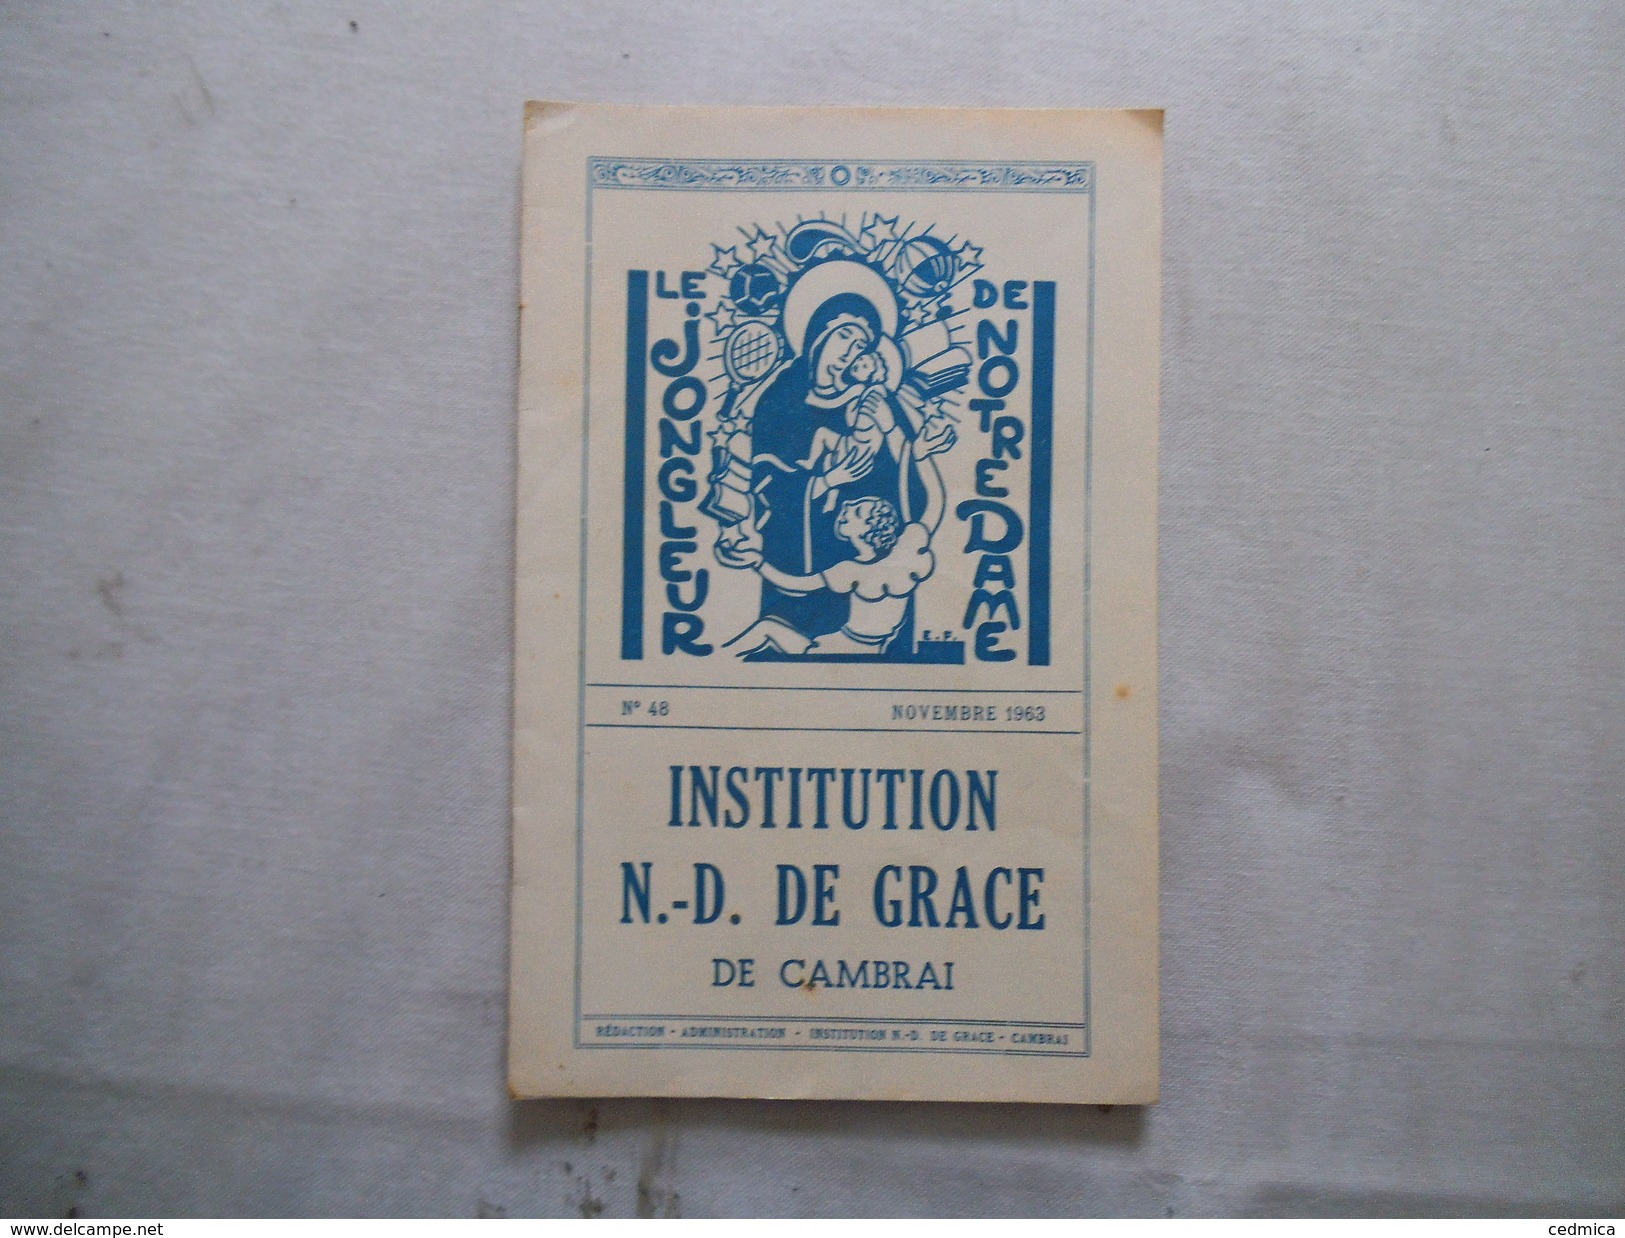 CAMBRAI INSTITUTION NOTRE-DAME DE GRACE LE JONGLEUR DE NOTRE DAME N°48 NOVEMBRE 1963 - Godsdienst & Esoterisme